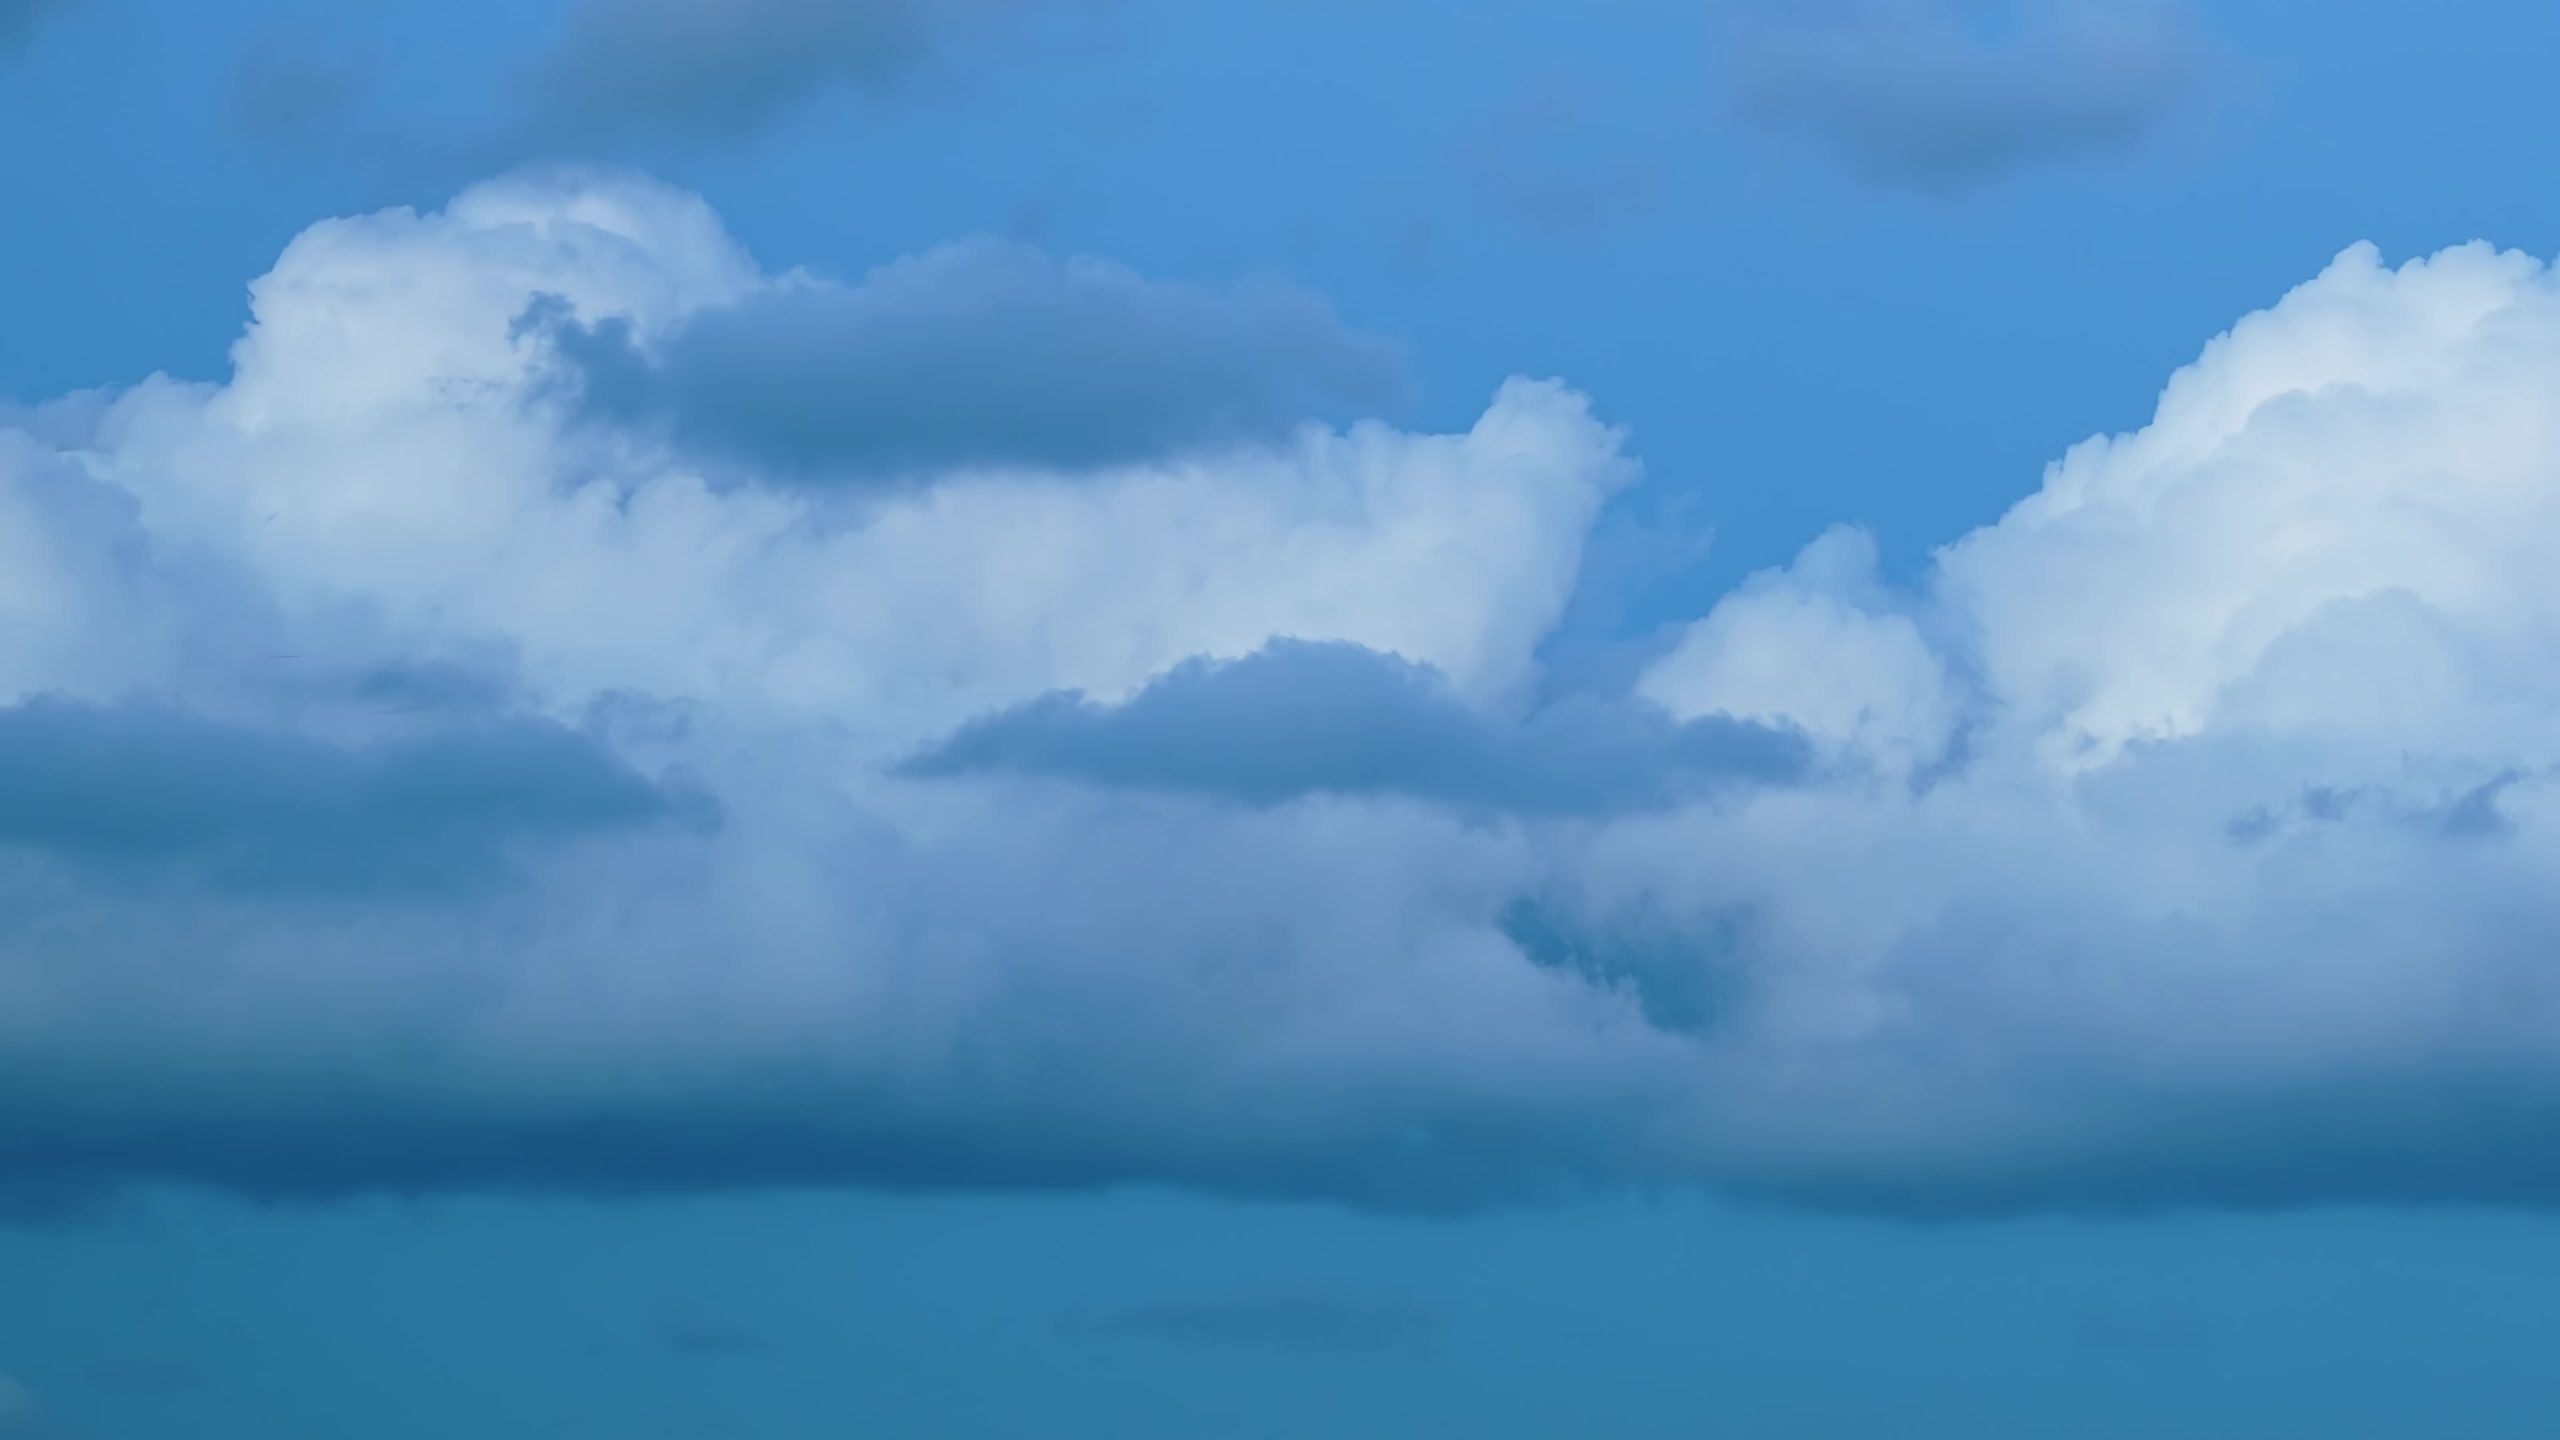 Le pittoresche nubi cumuliformi galleggiano veloci nel cielo azzurro